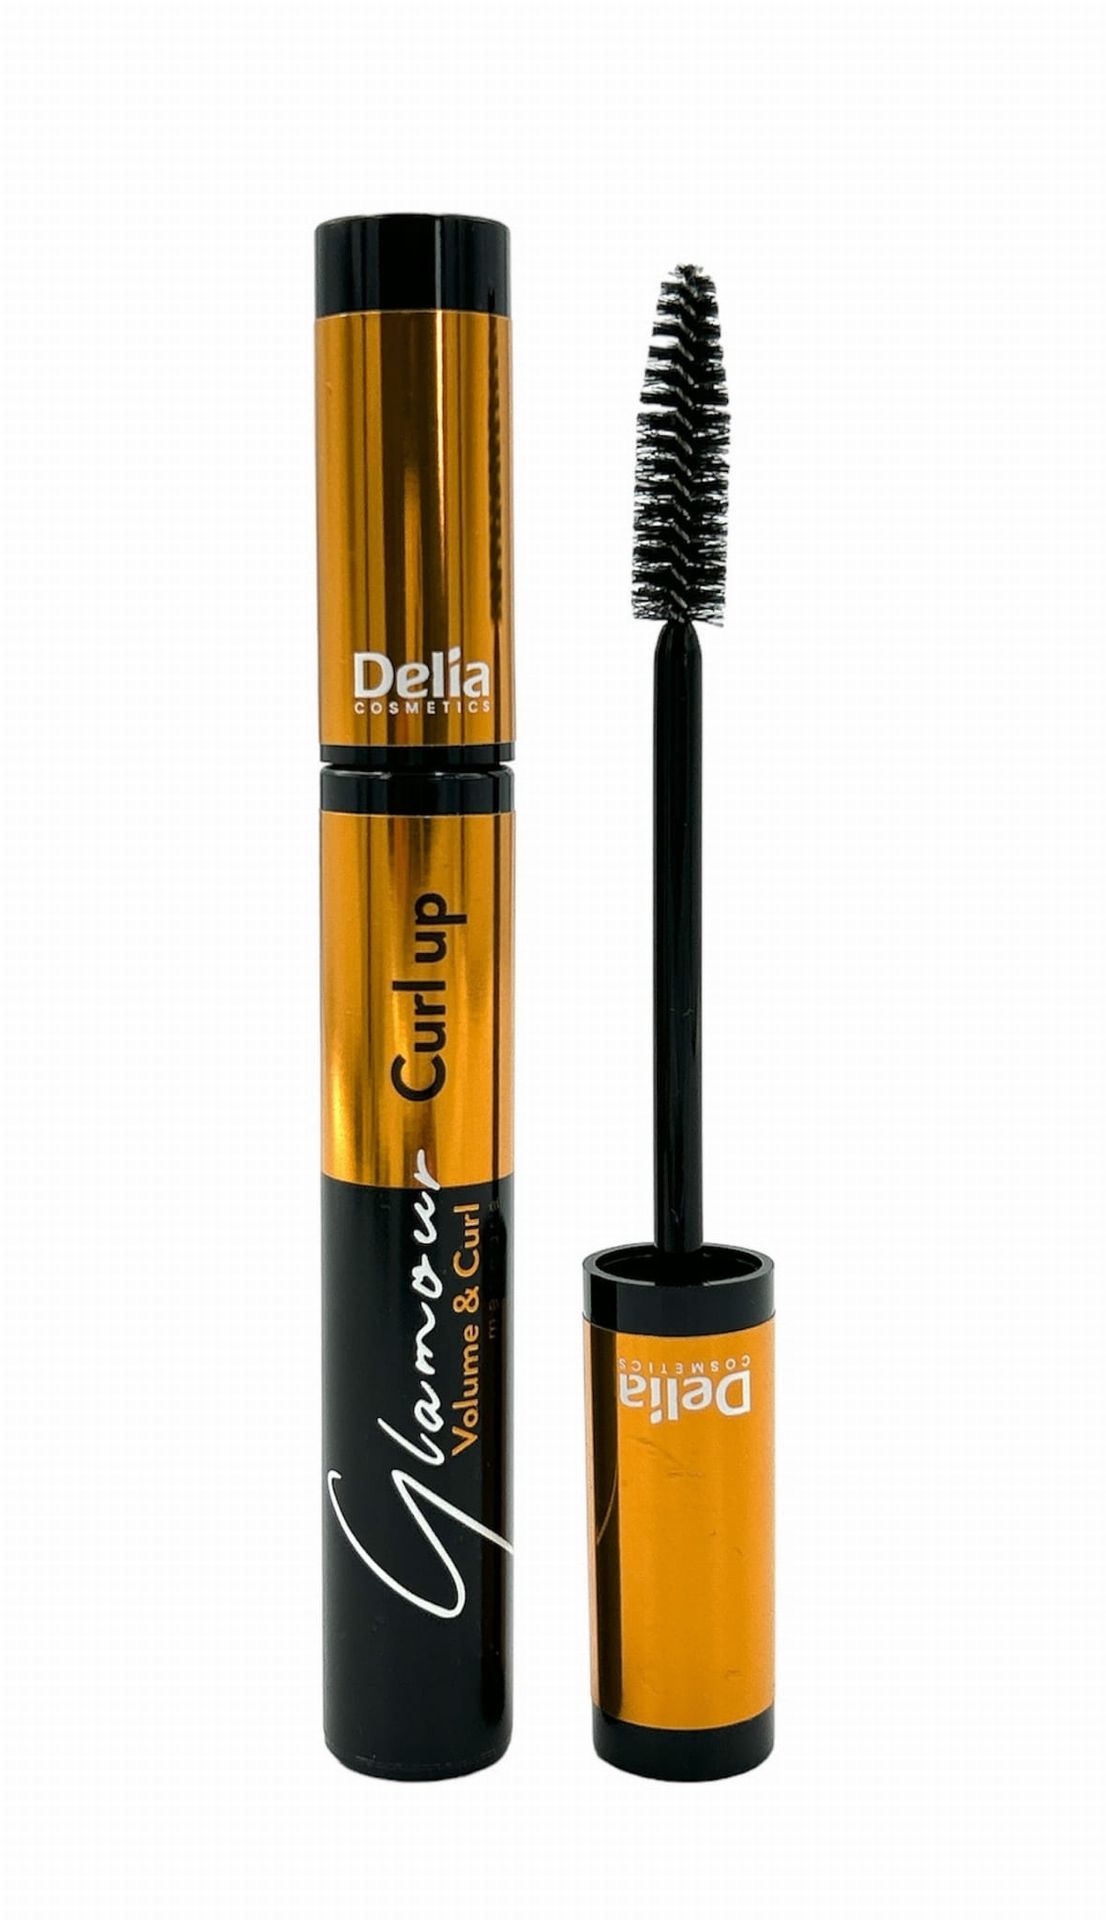 Delia Cosmetics Glamour tusz do rzęs zwiększający objętość wydłużający i podkręcający odcień Black 12 ml